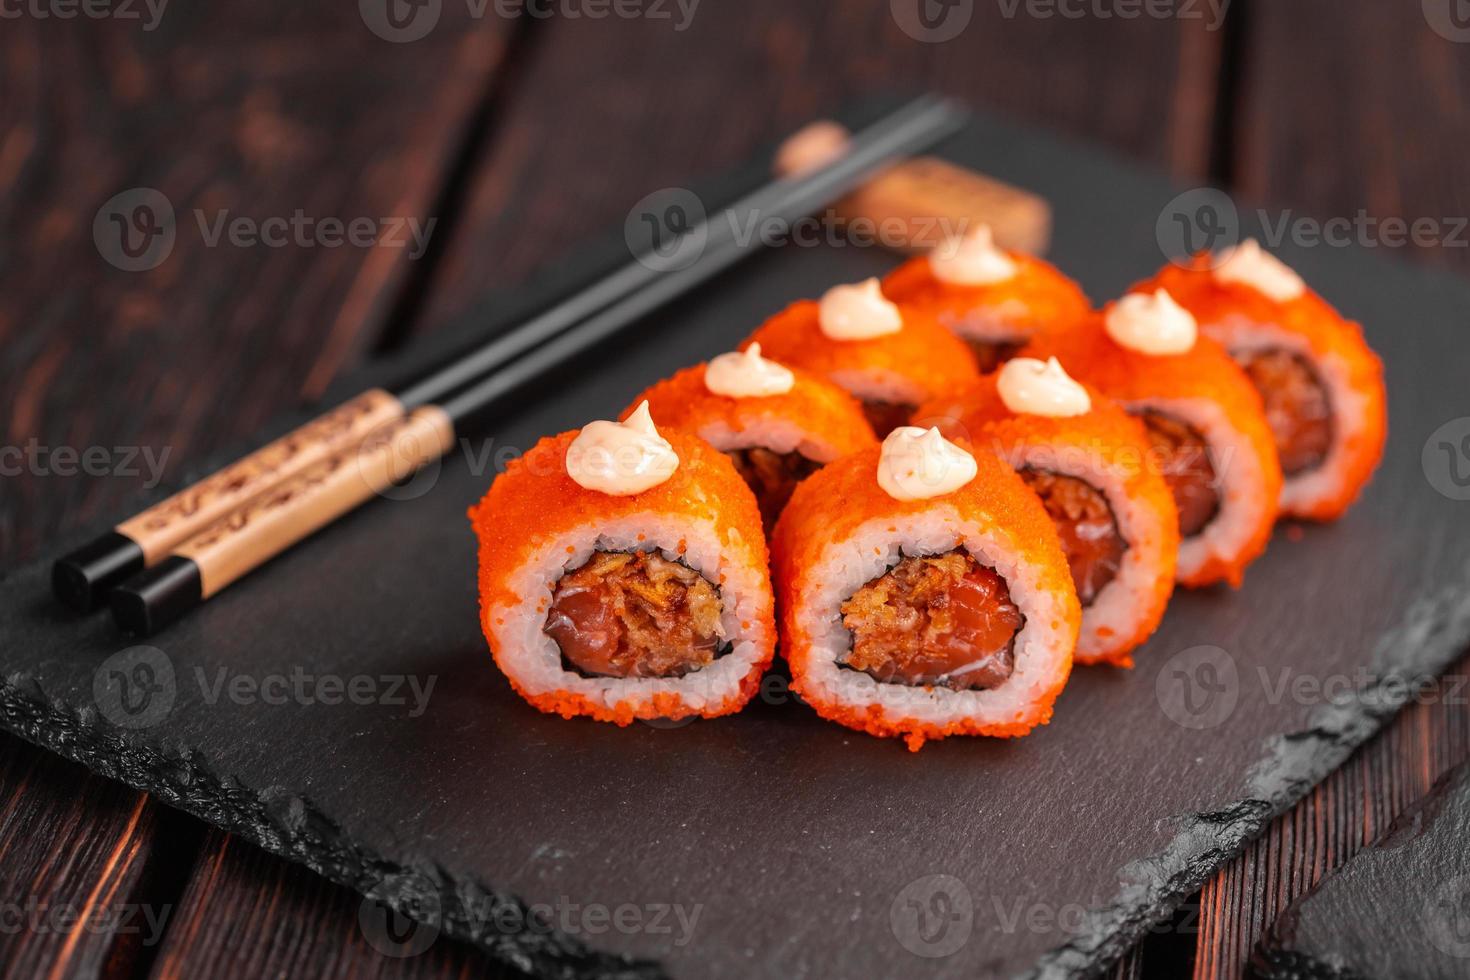 rouleau de sushi au thon, oignon dans la pâte et caviar tobiko servi sur tableau noir en gros plan - cuisine japonaise photo